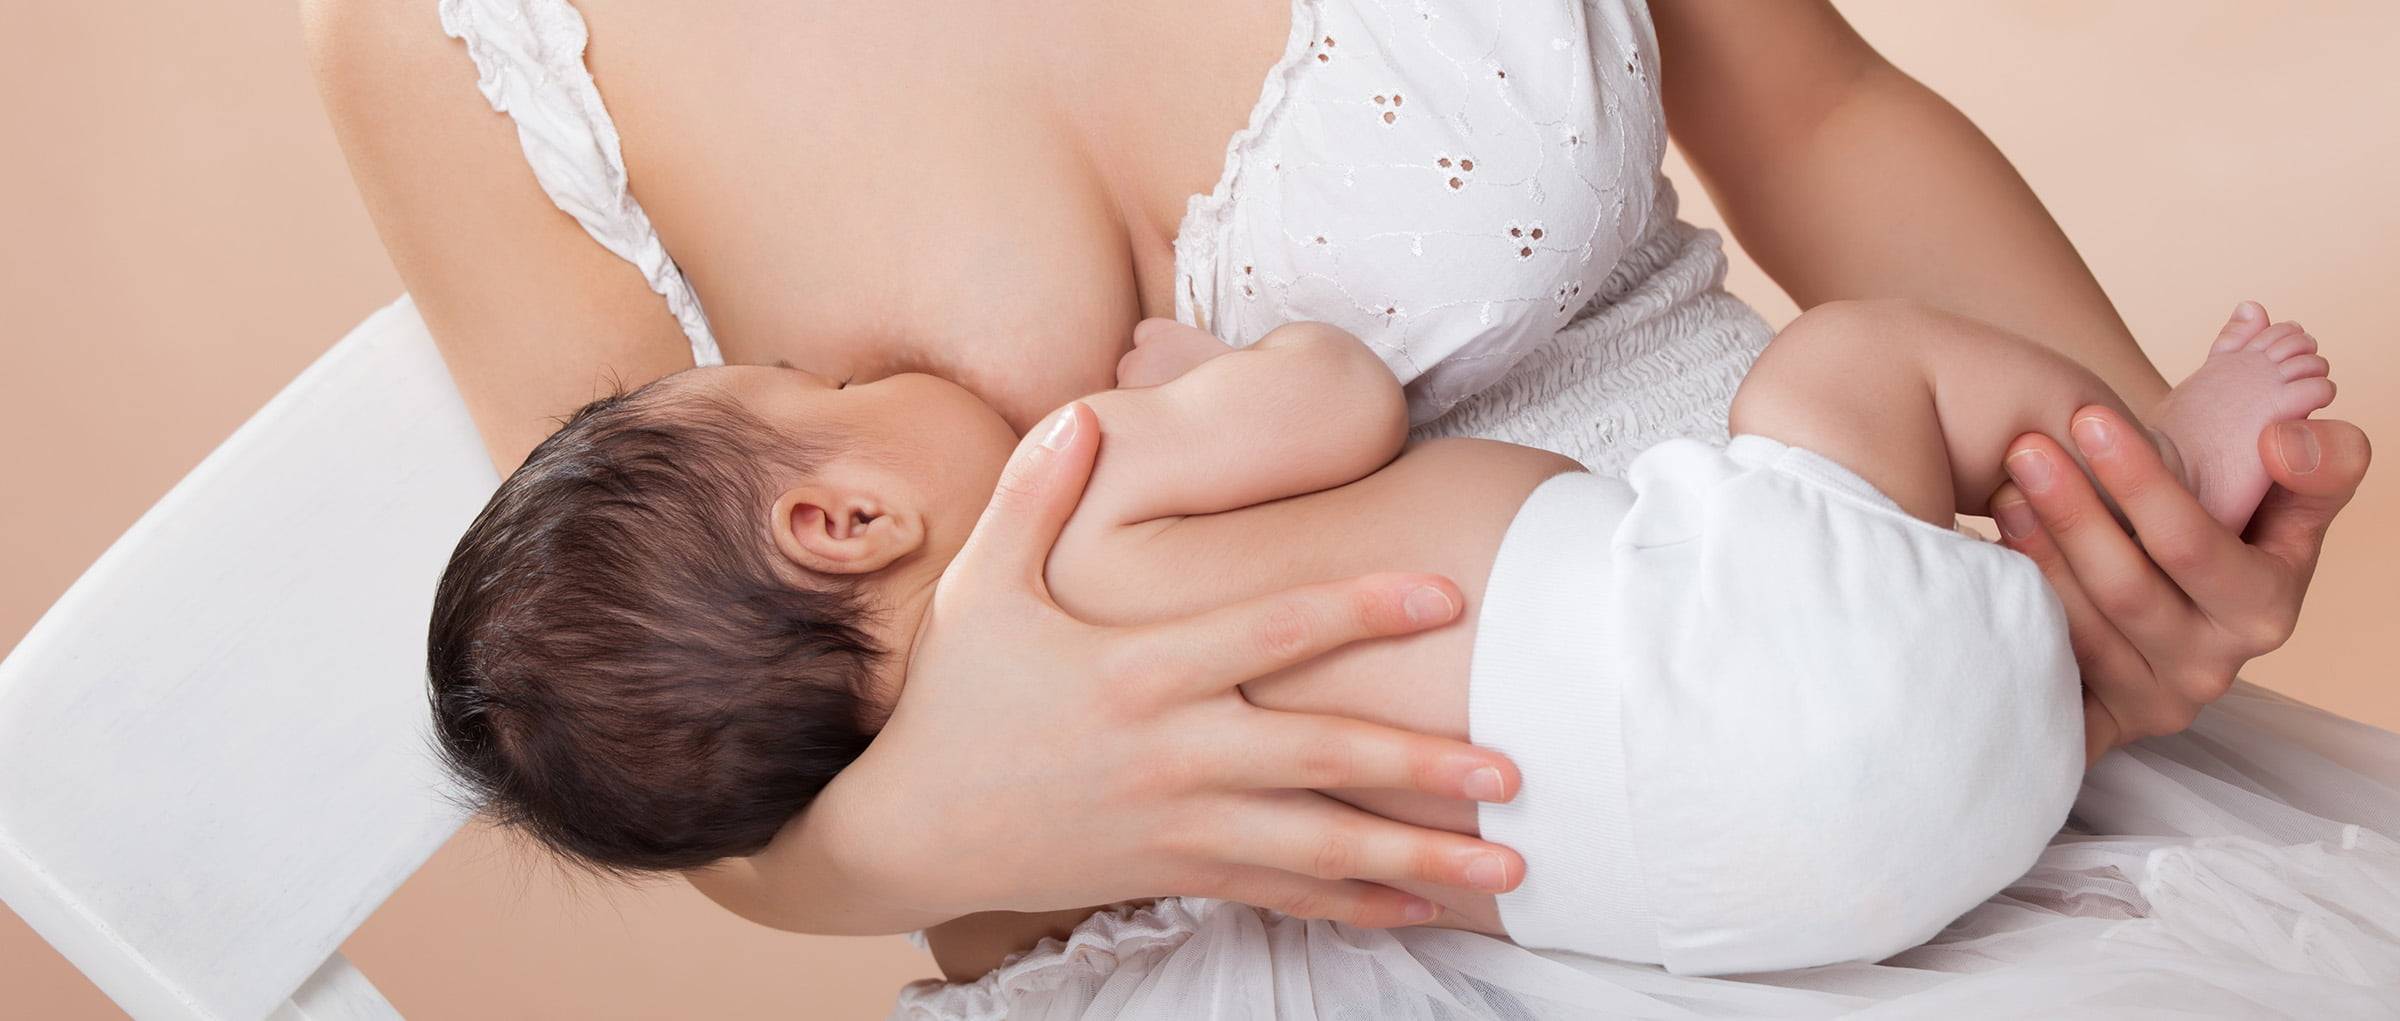 Что делать если застудили грудь в период лактации | блог мамы-врача